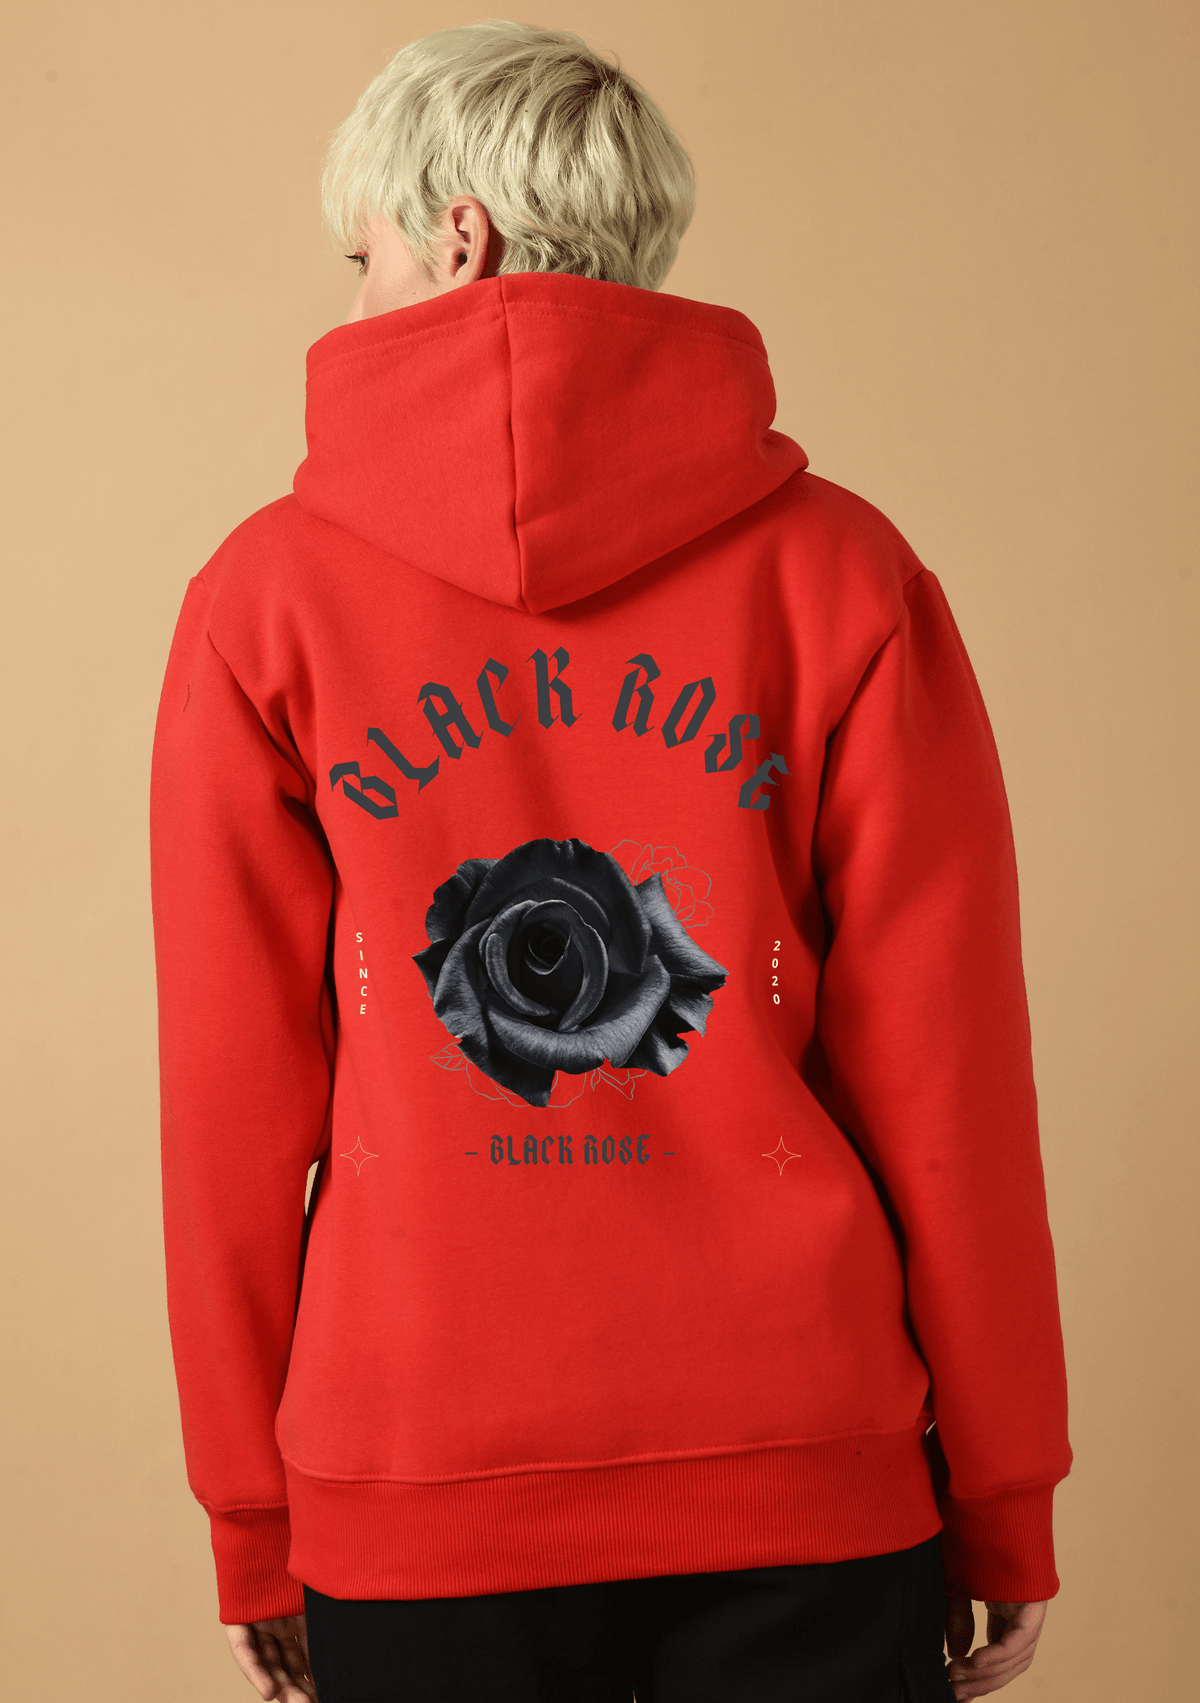 Black rose black printed red hoodie by offmint